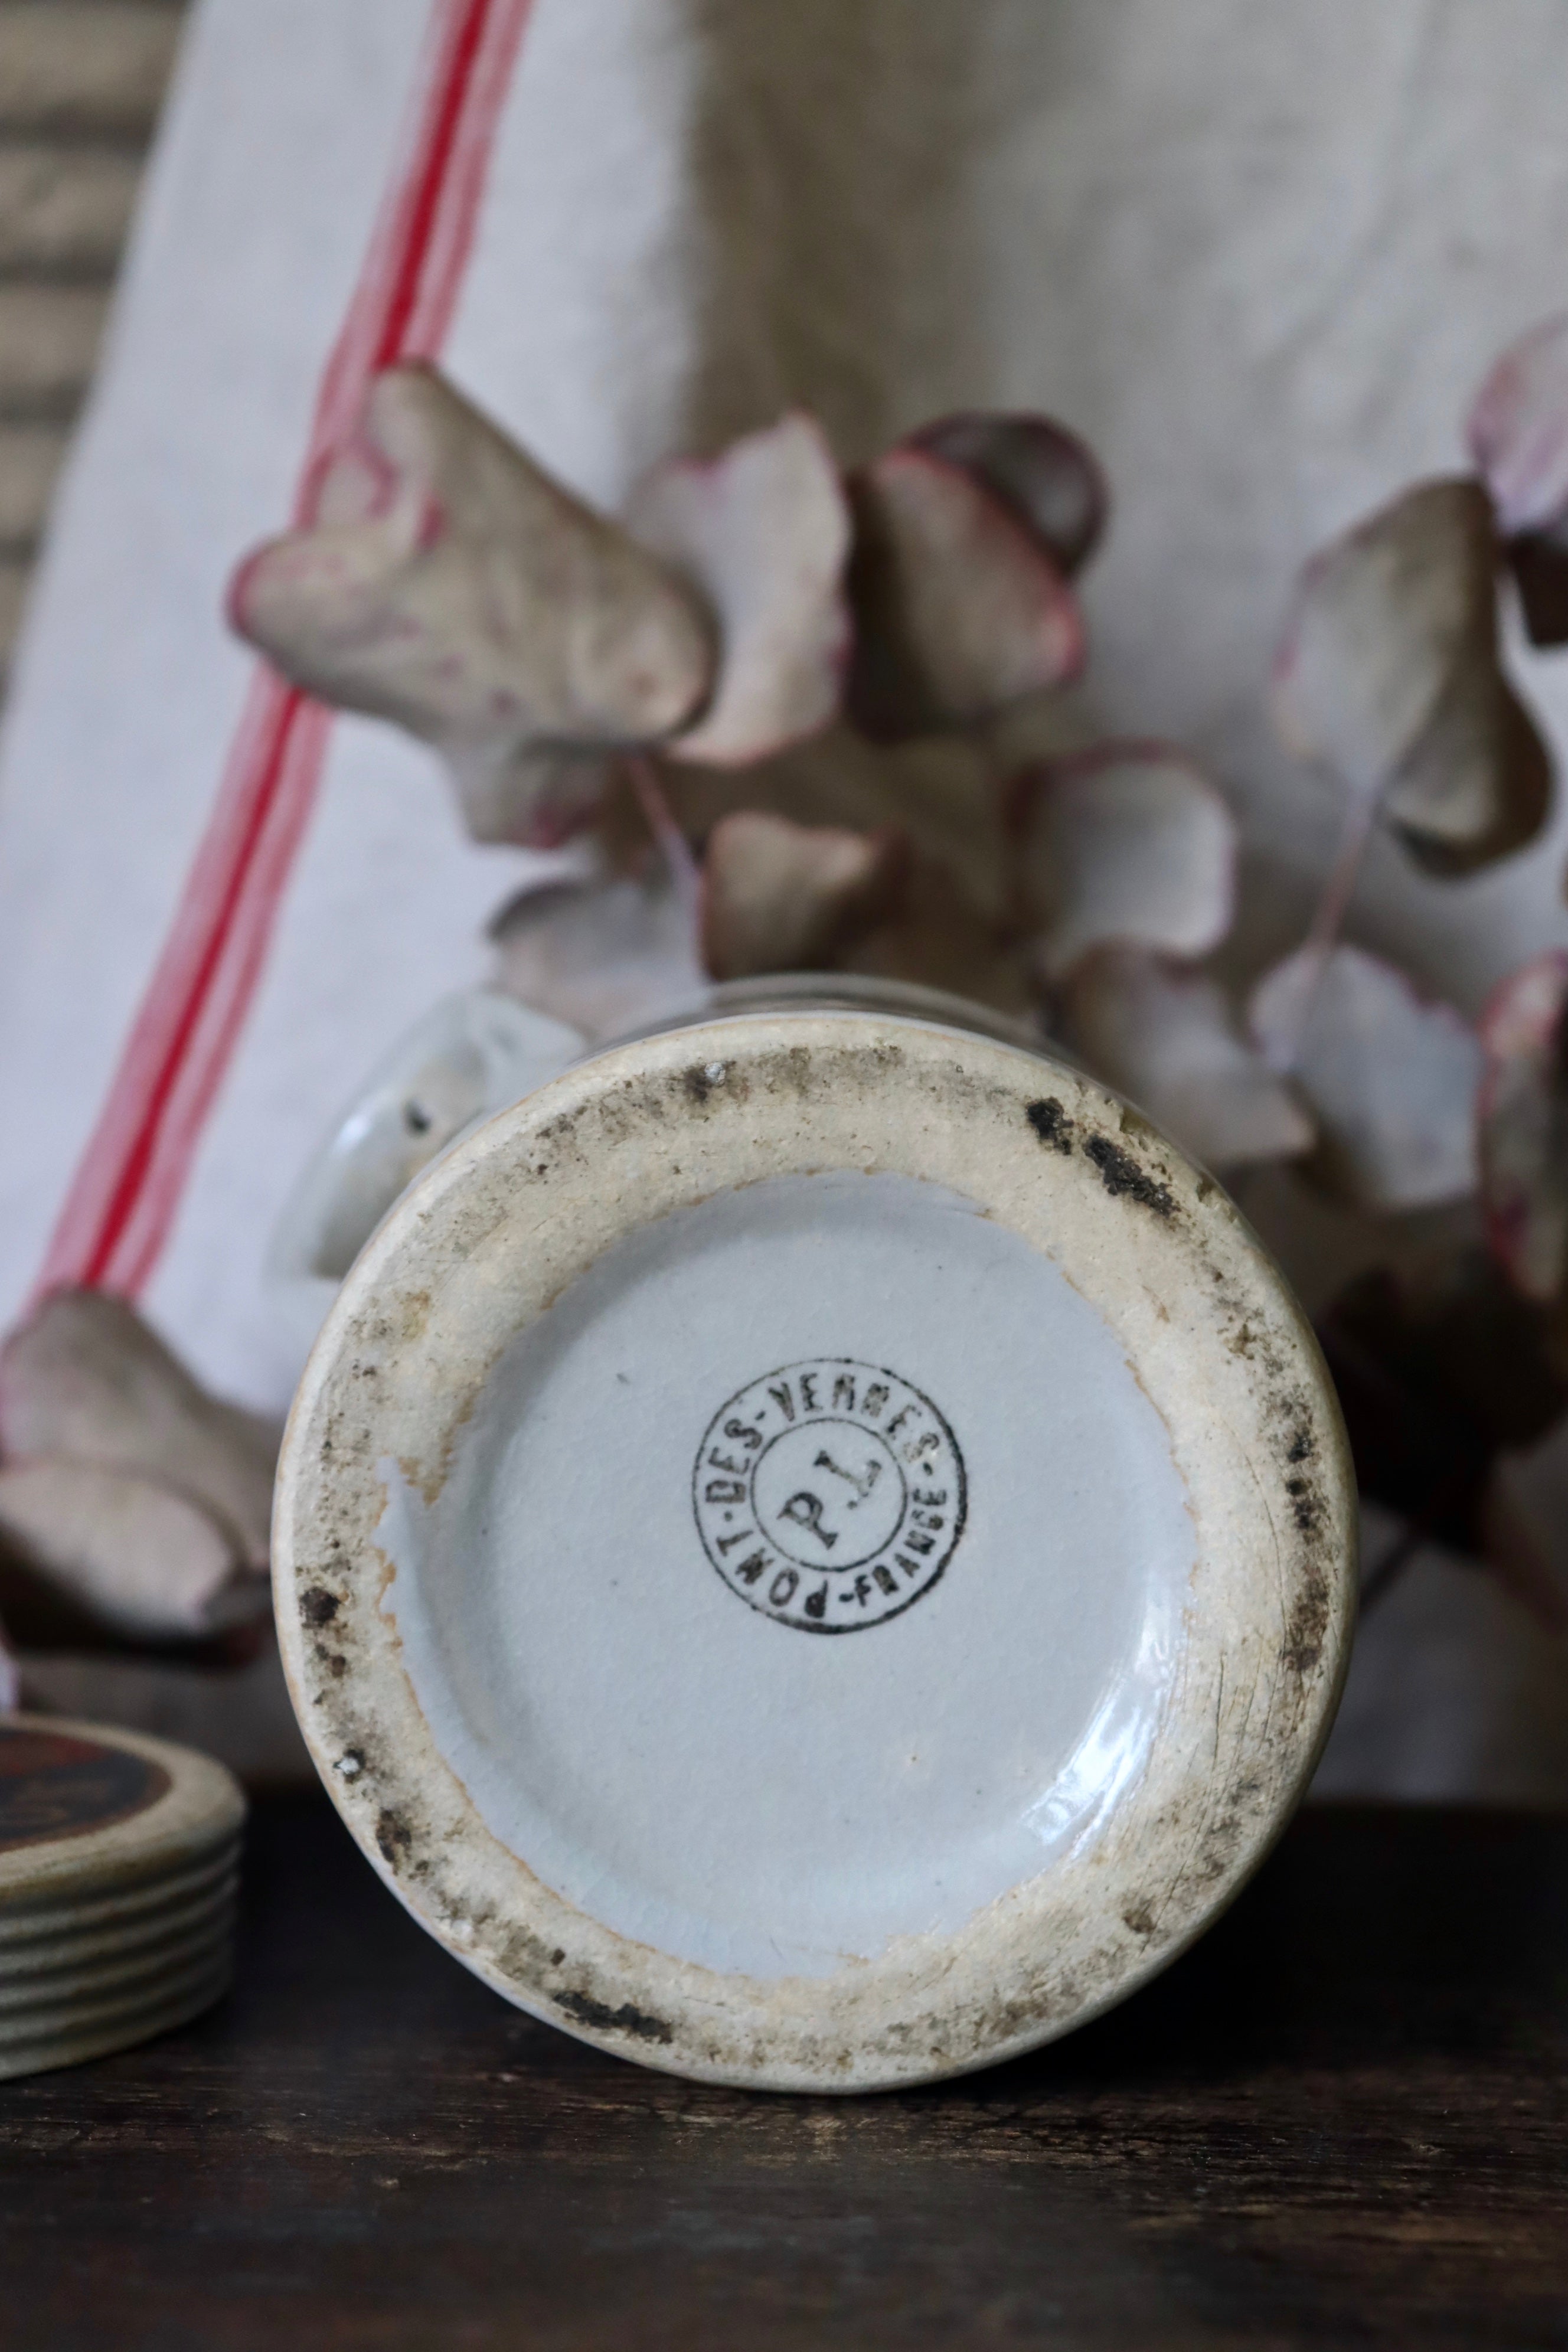 Moutarde Grey-Poupon A Dijon Stoneware Advertising Pot